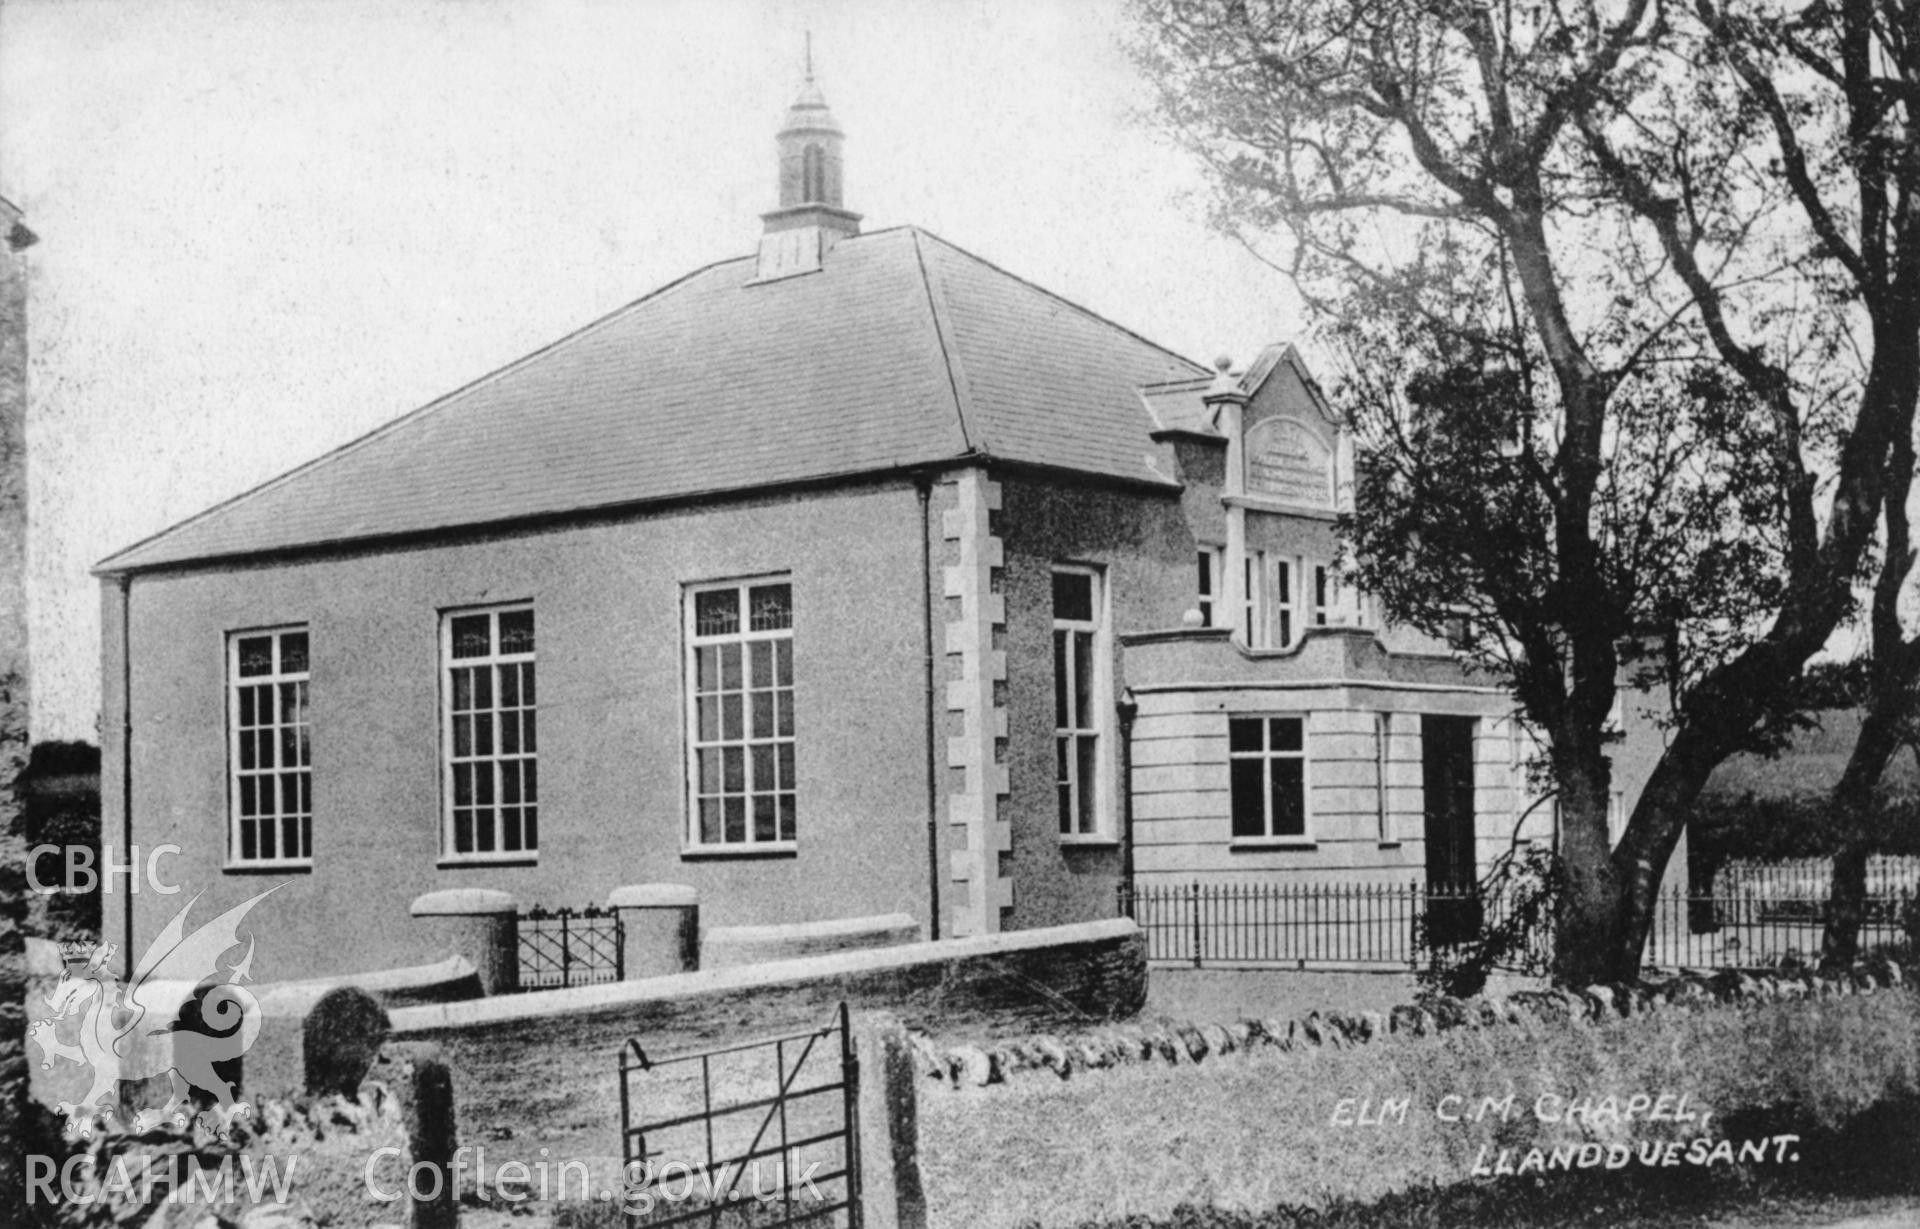 Elim Chapel, Llanddeusant; pre 1924 B&W postcard showing exterior of chapel.